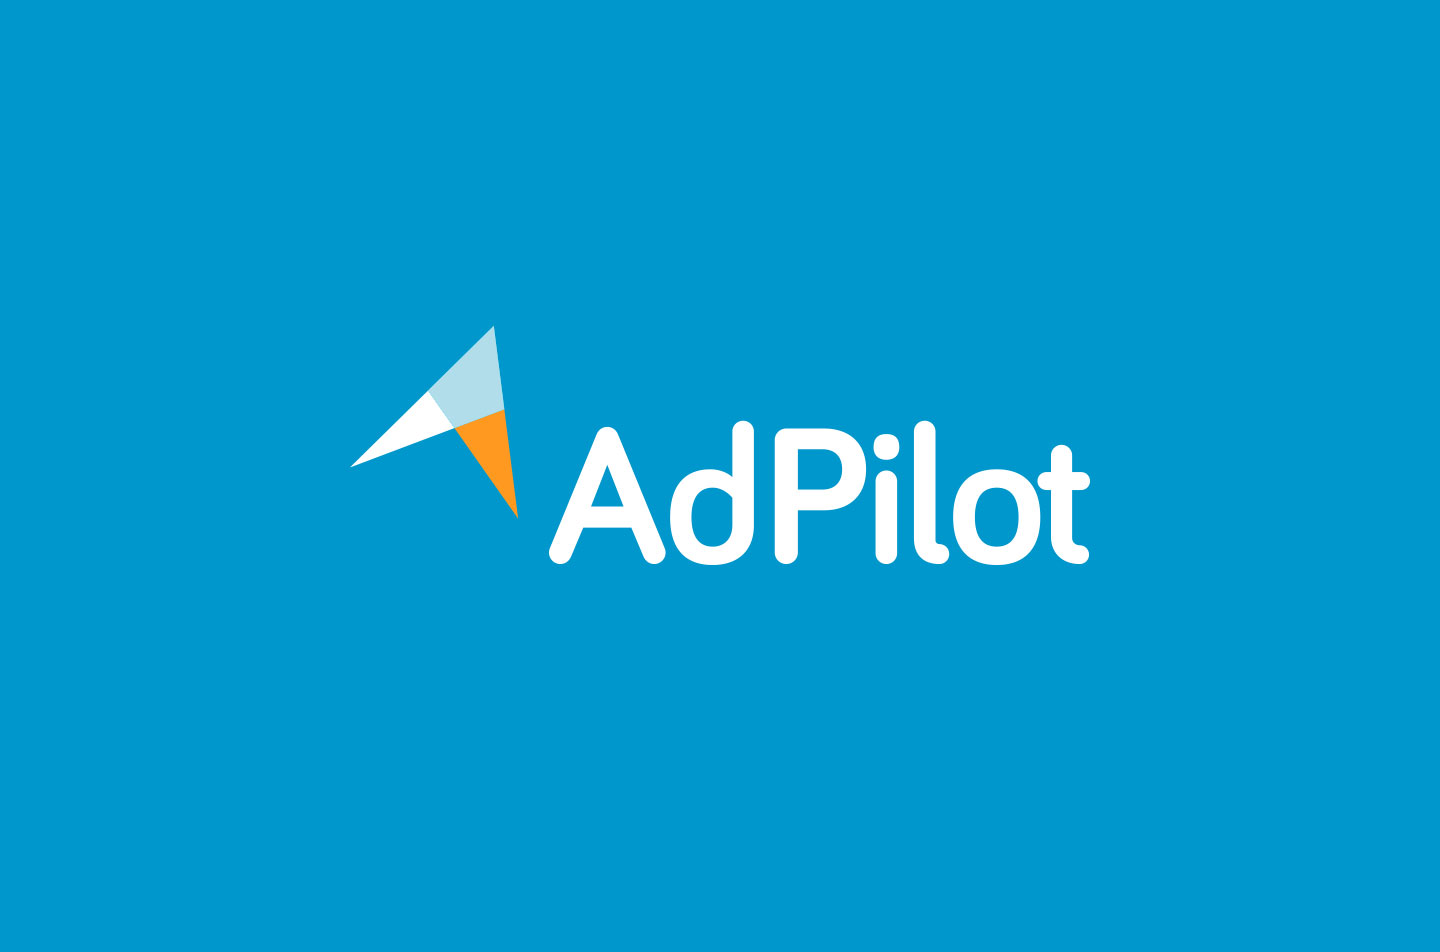 AdPilot logo design